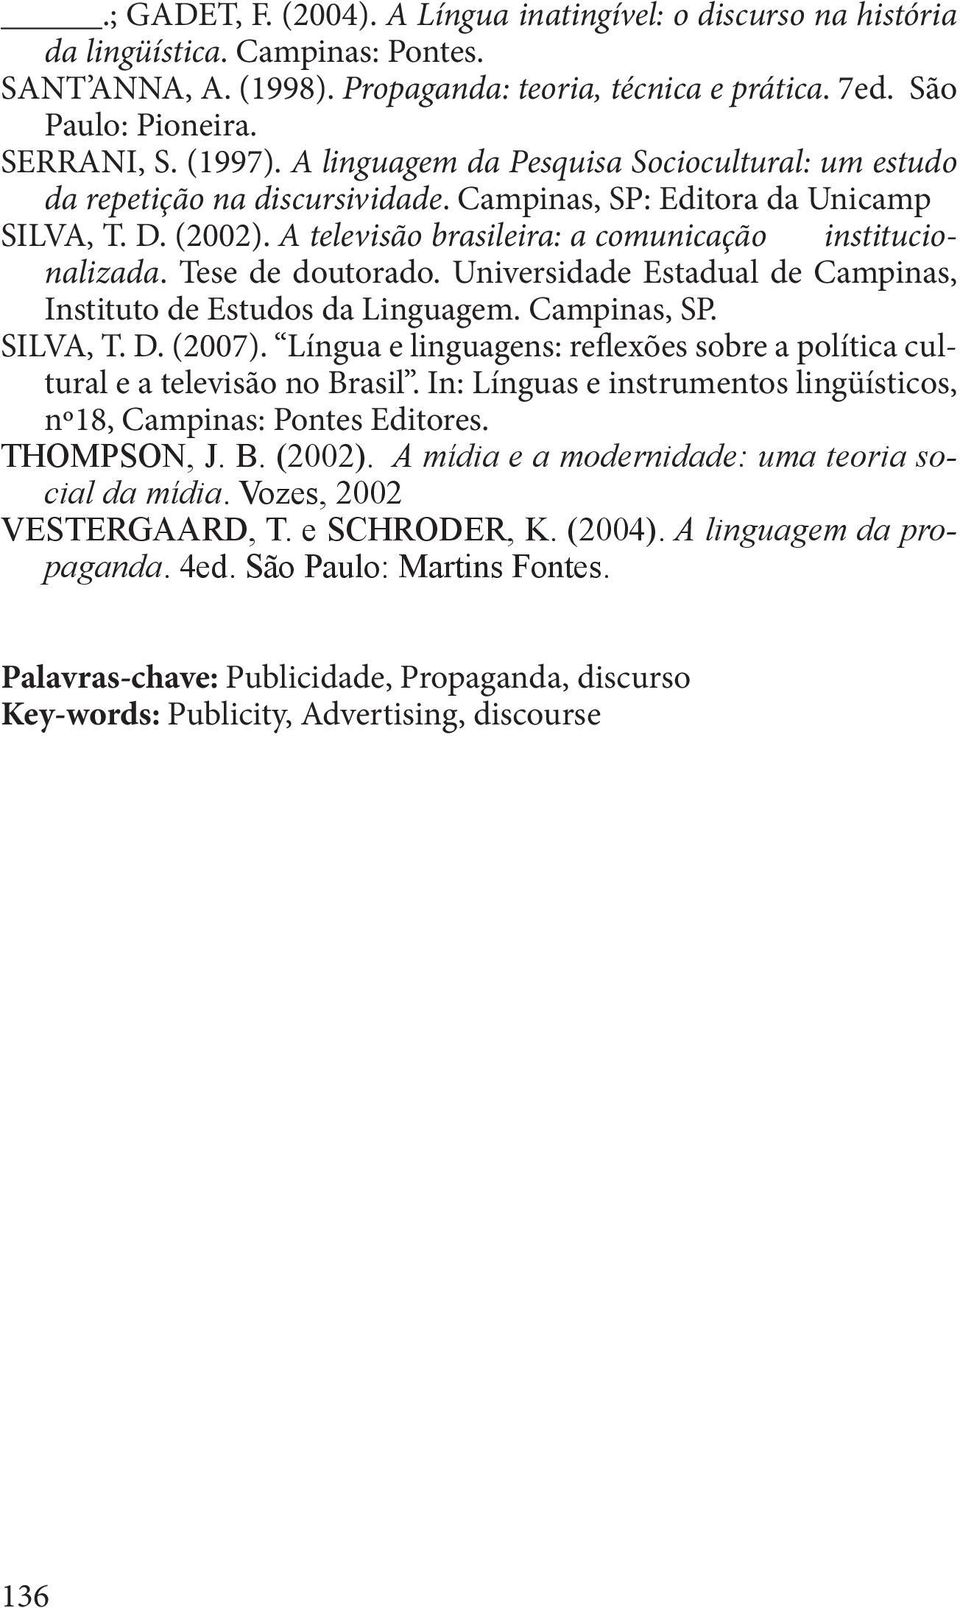 Tese de doutorado. Universidade Estadual de Campinas, Instituto de Estudos da Linguagem. Campinas, SP. SILVA, T. D. (2007).